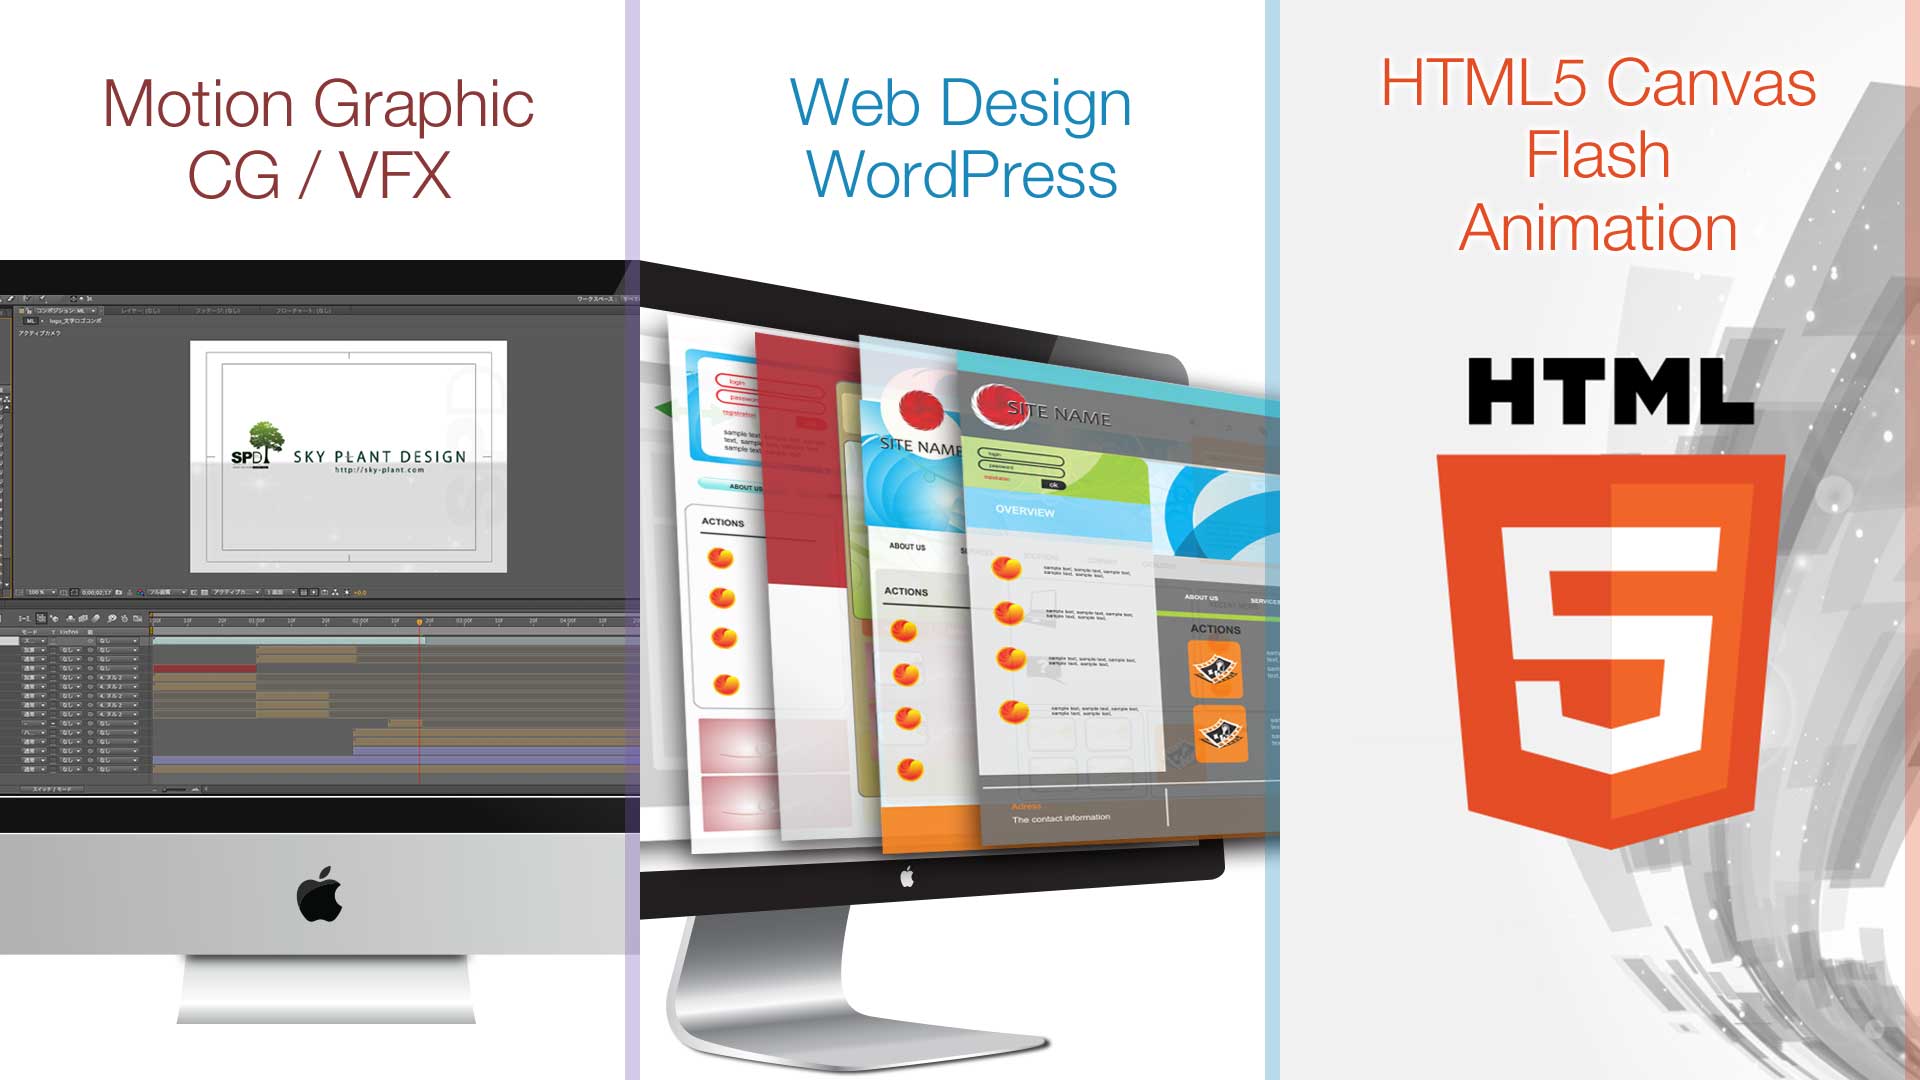 映像,CG,VFX,ウェブデザイン,WEB,HTML5 canvas,FLASH,アニメーション,グラフィックデザイン,印刷,GRAPHIC Design